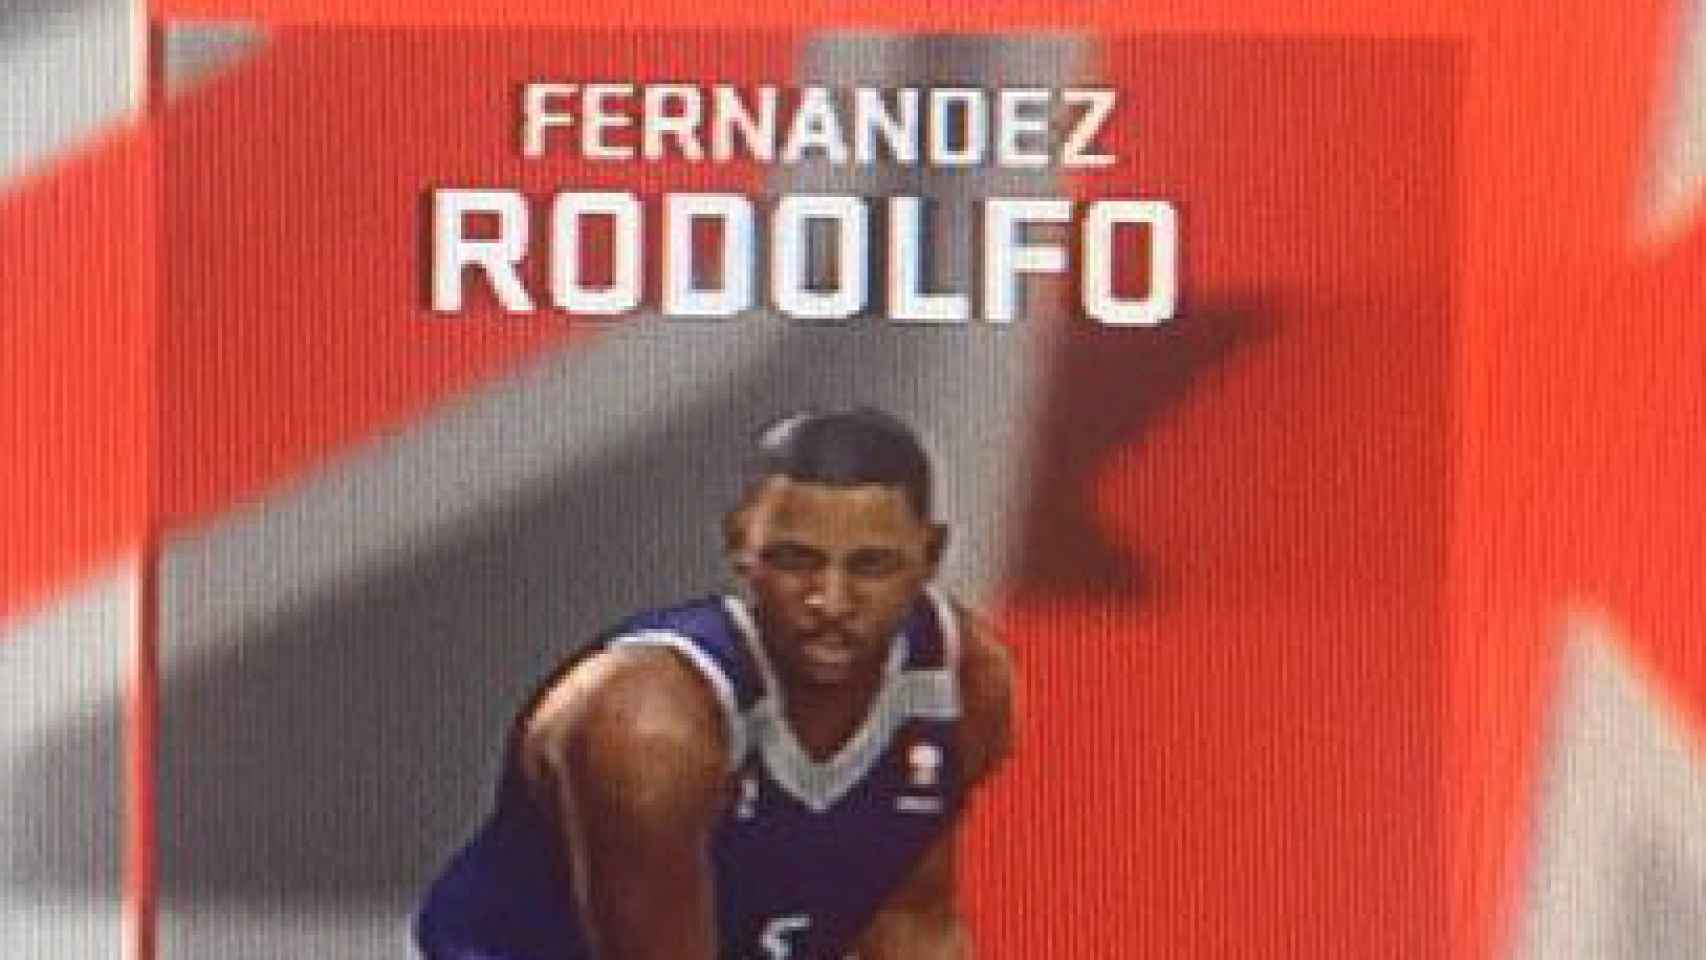 Imagen de Rudy Fernández en el NBA 2K17, subida por el jugador a Twitter.